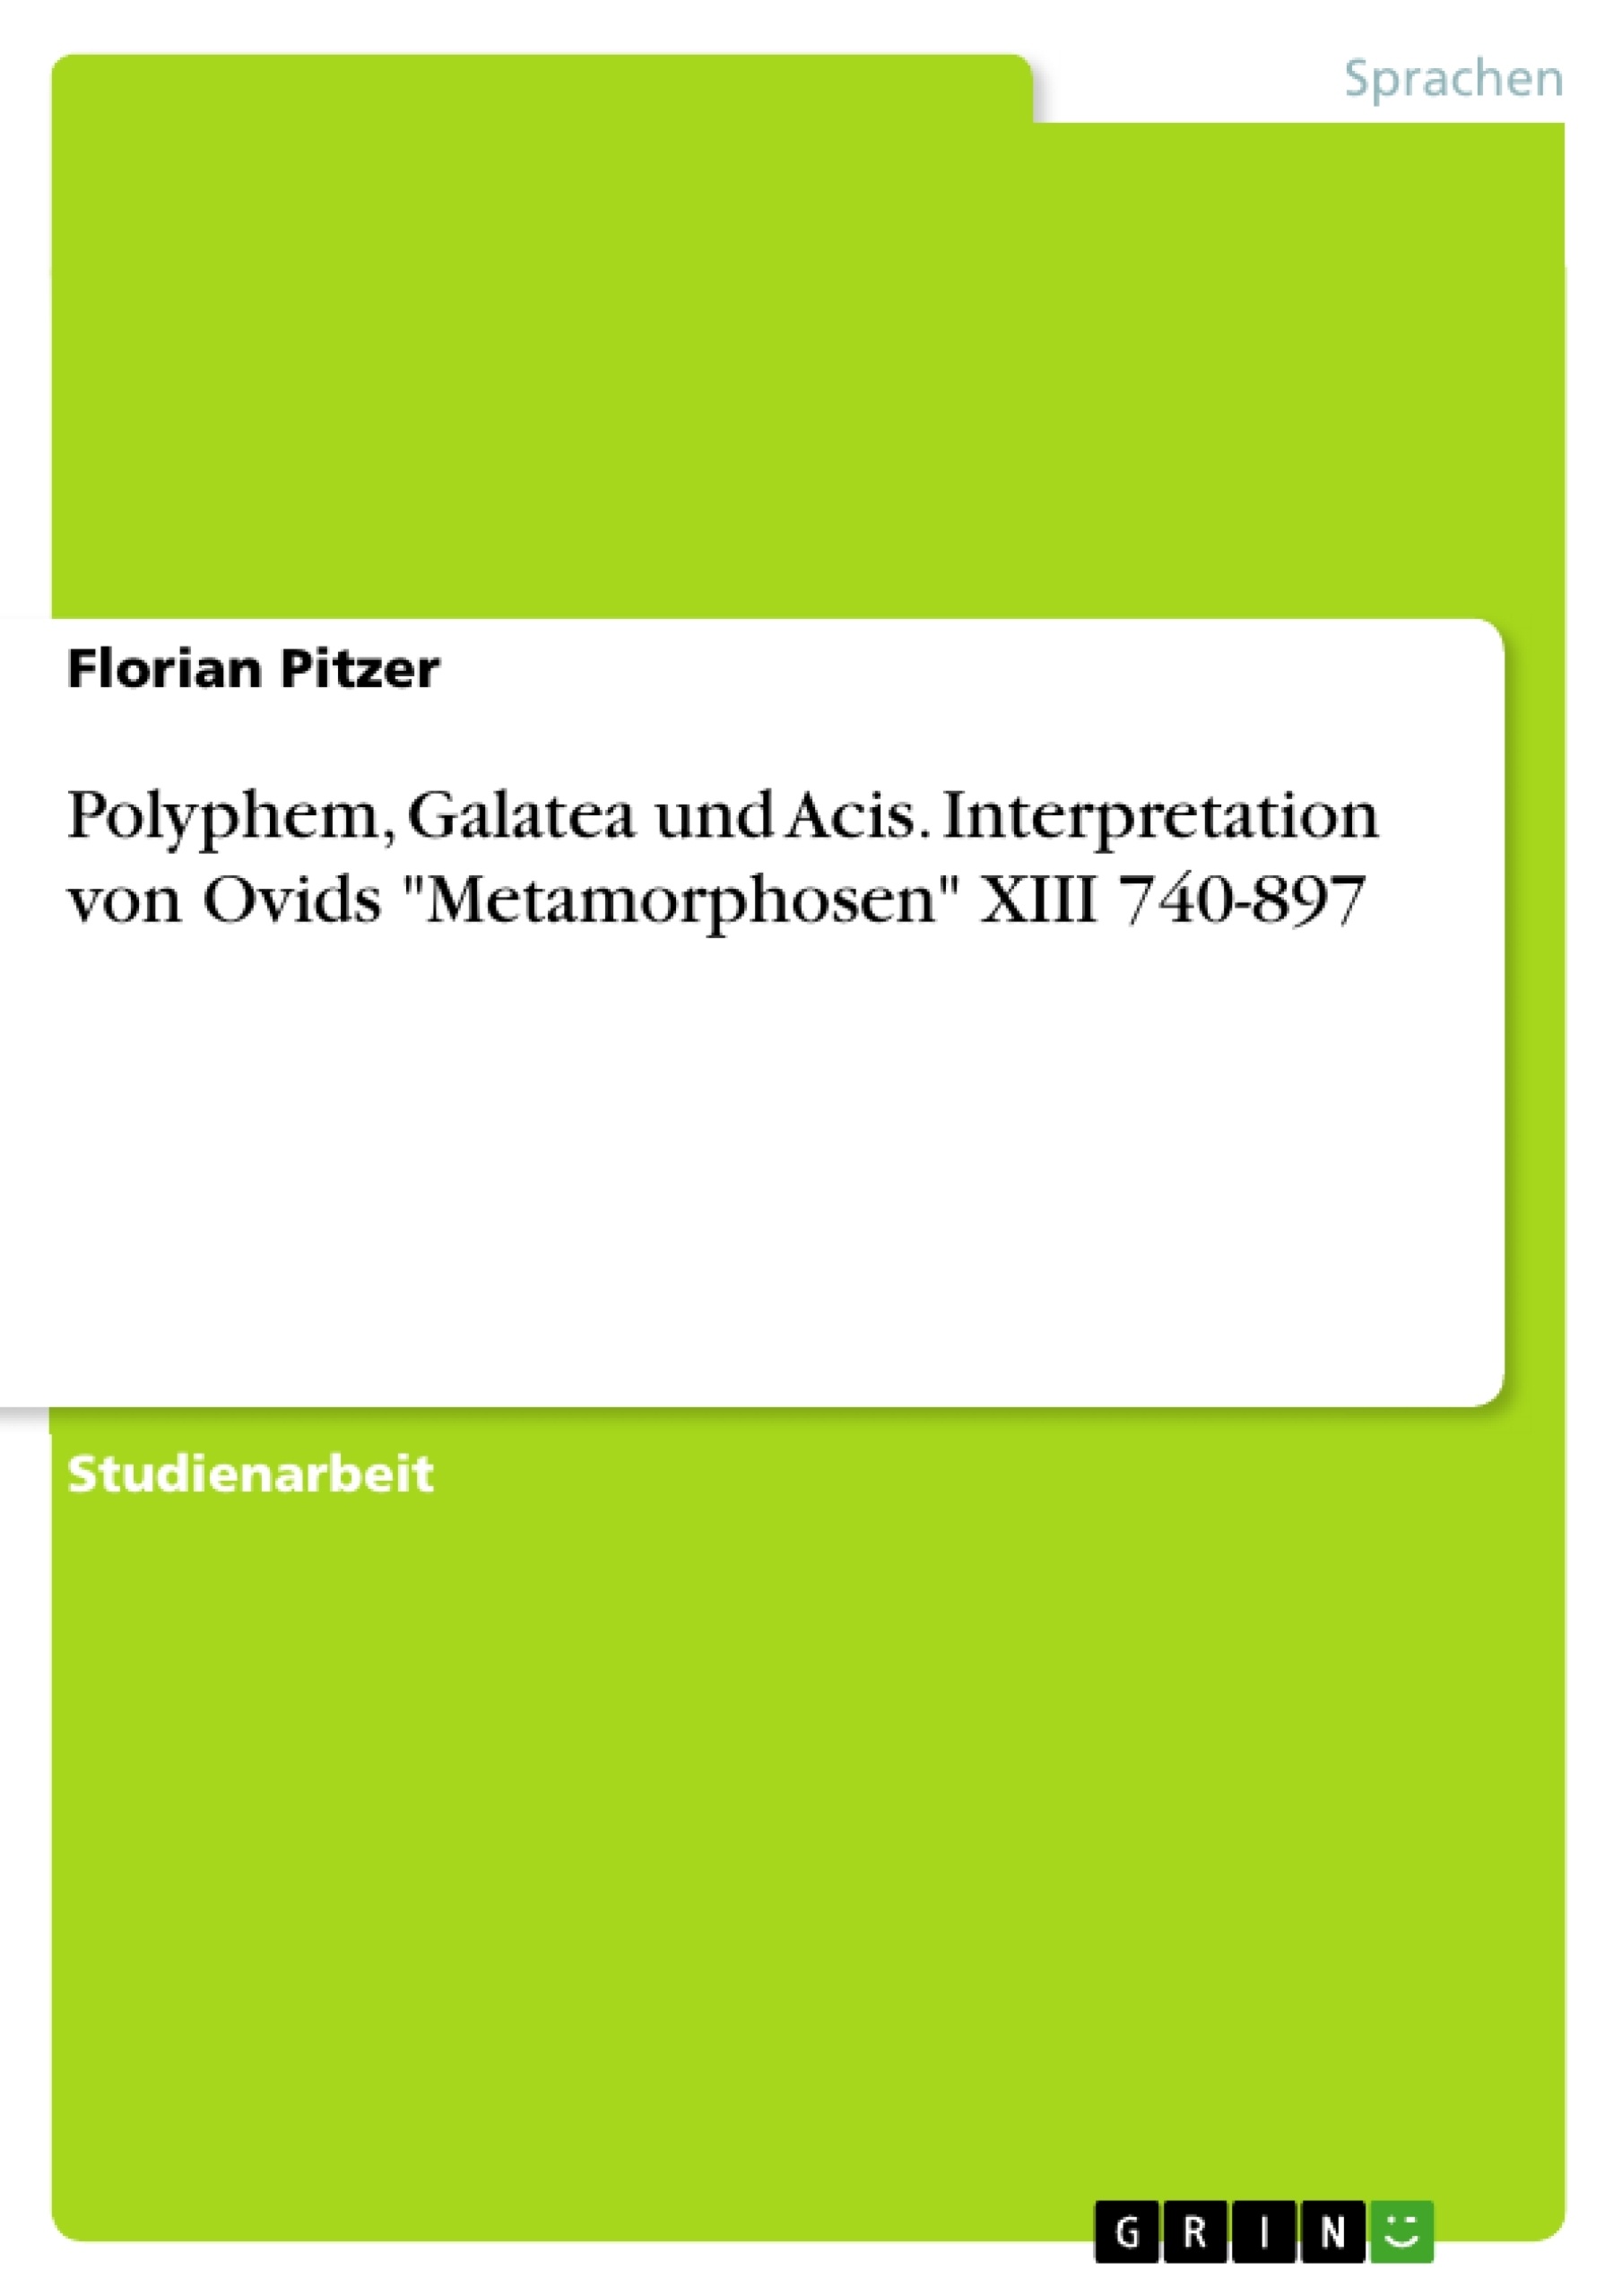 Título: Polyphem, Galatea und Acis. Interpretation von Ovids "Metamorphosen" XIII 740-897